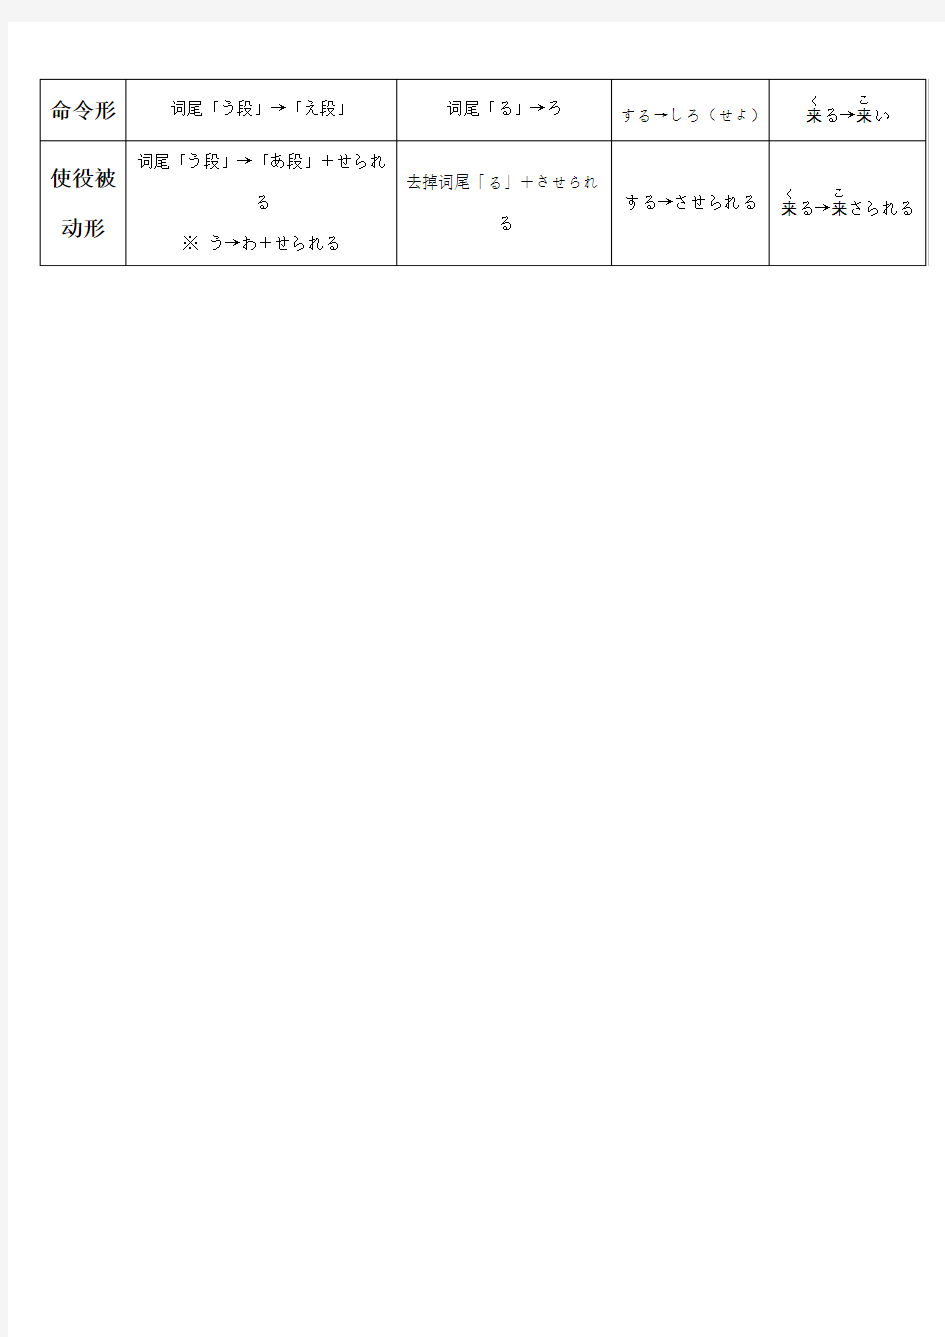 日语动词12种活用形